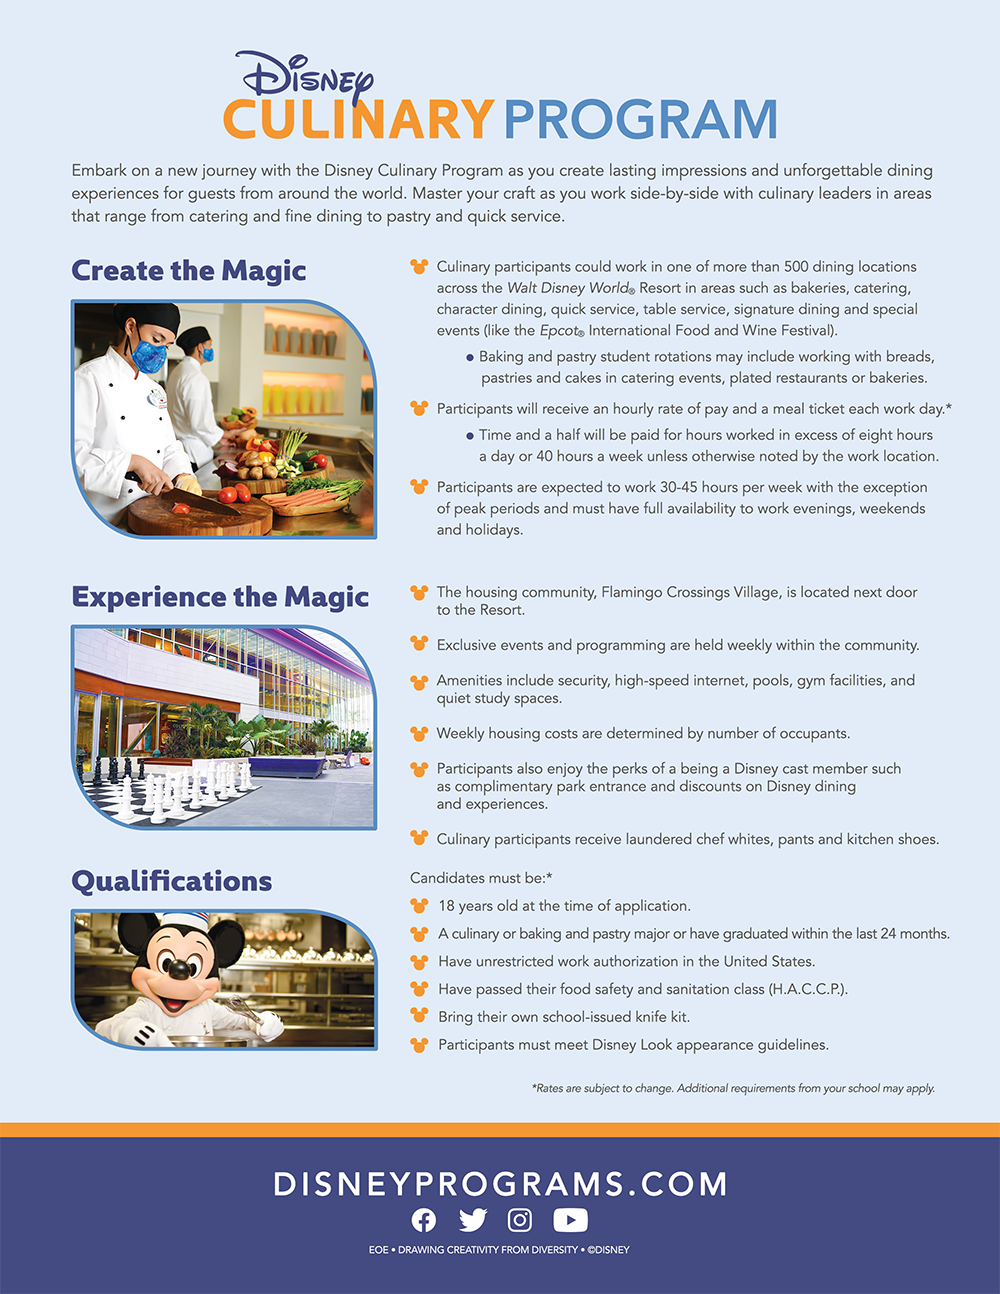 Disney Cullinary program fact sheet